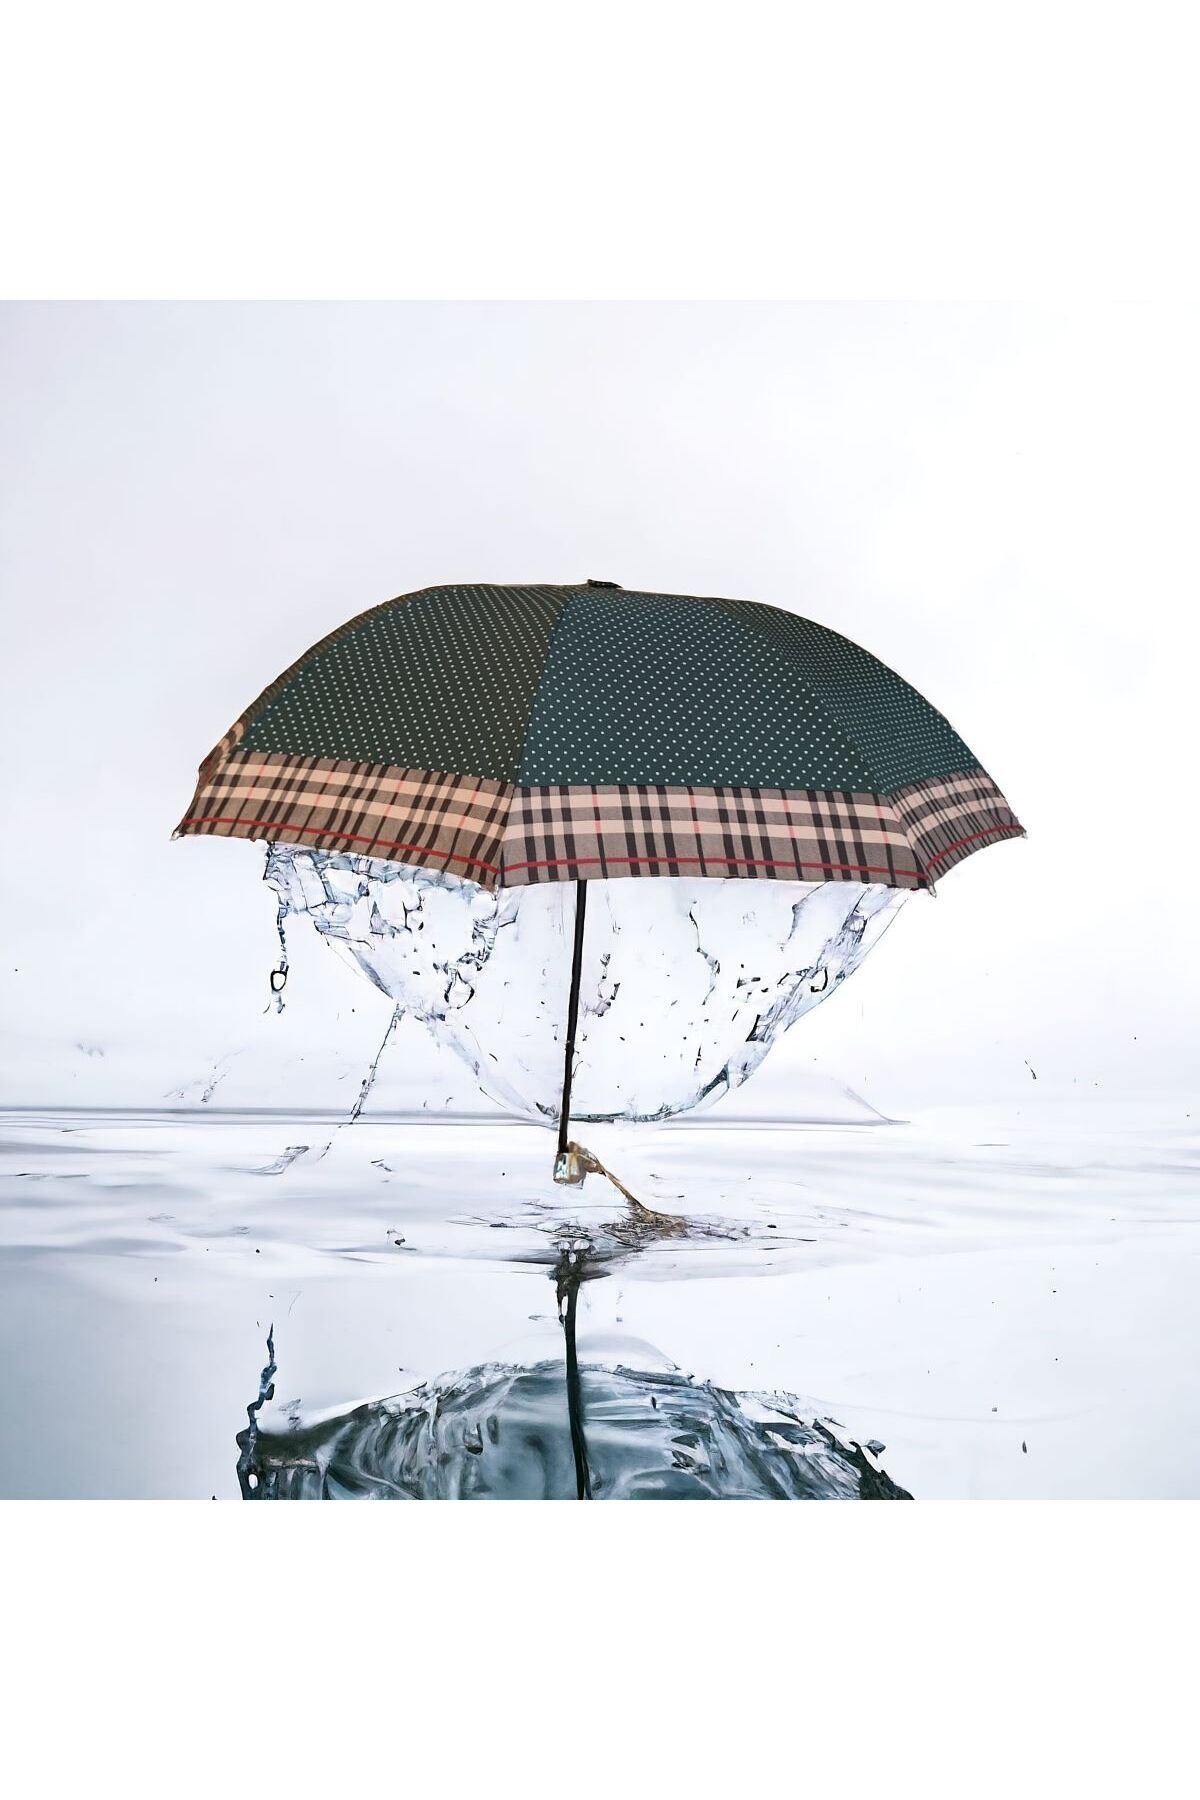 Yenigeldi Seyahat Şemsiyesi Yağmur ve Güneş için Mini Şemsiyeler Hafif Küçük UV Güneş Şemsiyesi Kılıflı Cep